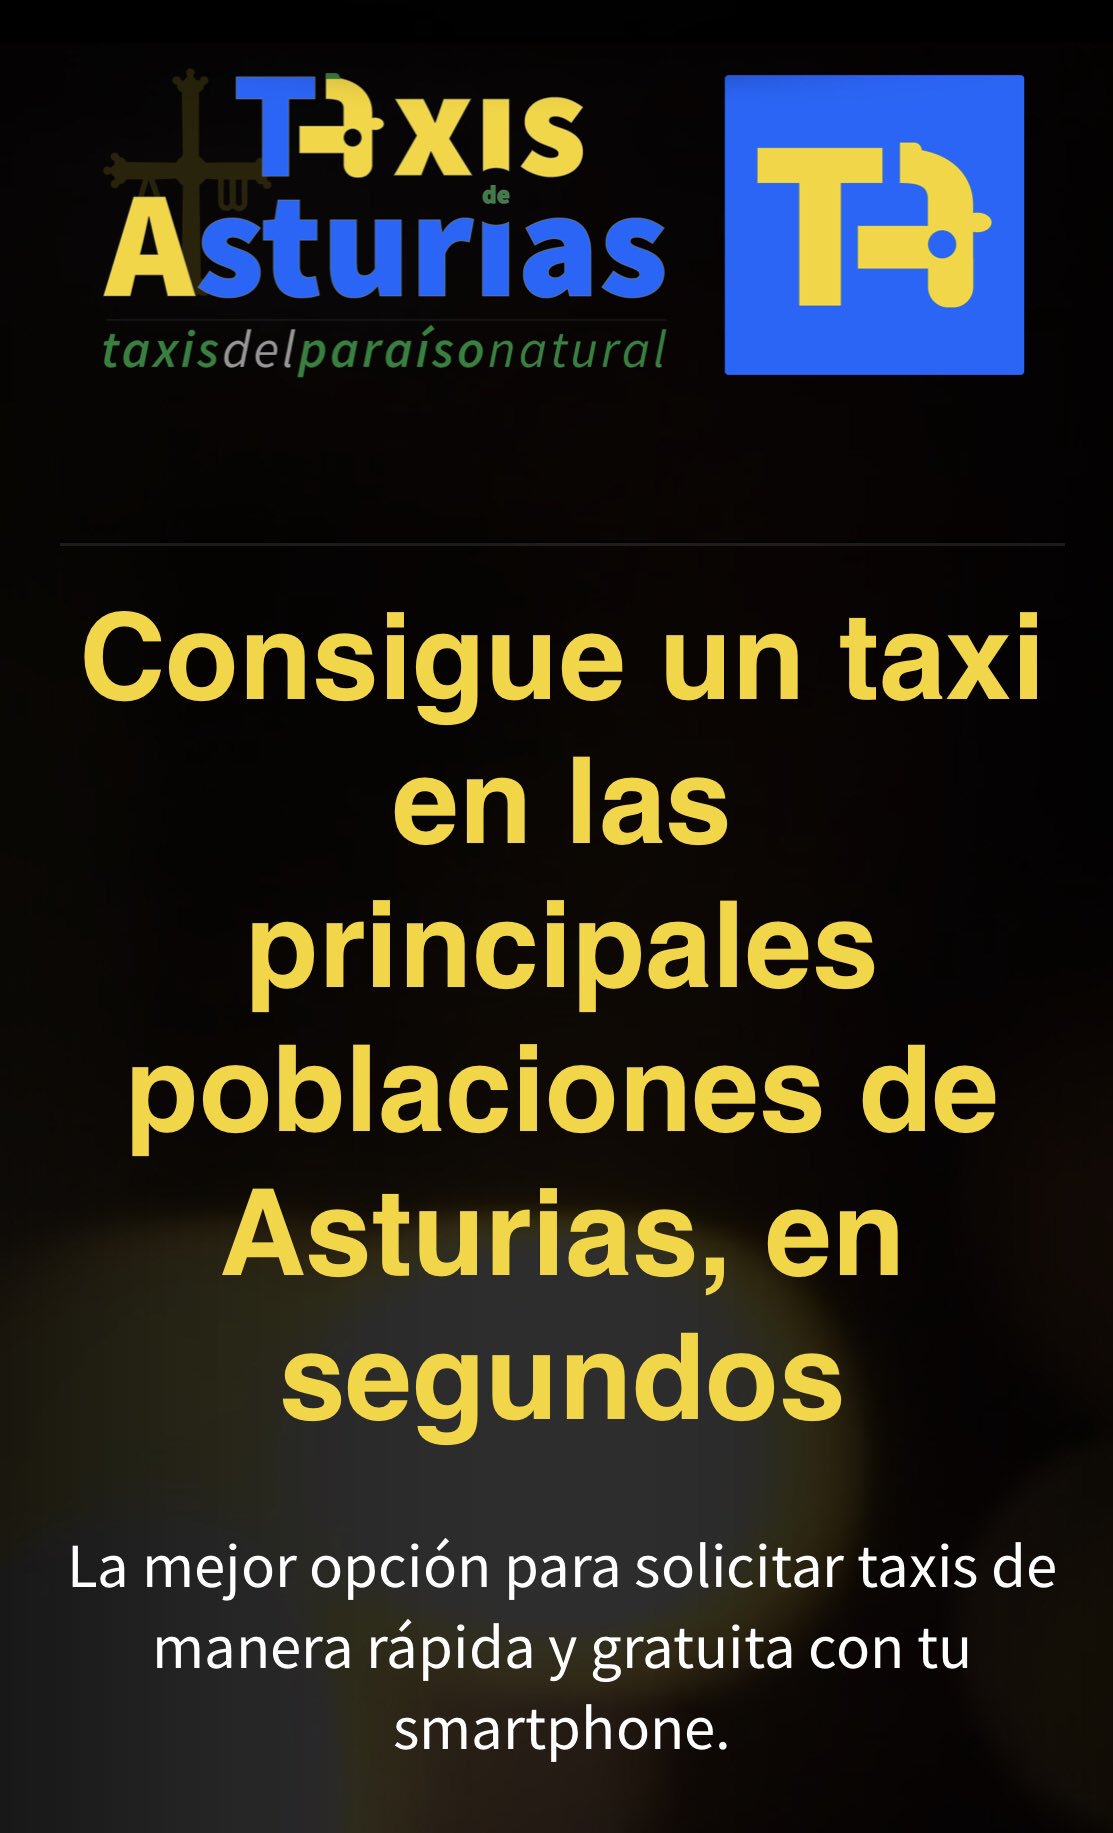 Enriquecimiento civilización alumno Taxi Corvera (@TaxiCorvera) / Twitter